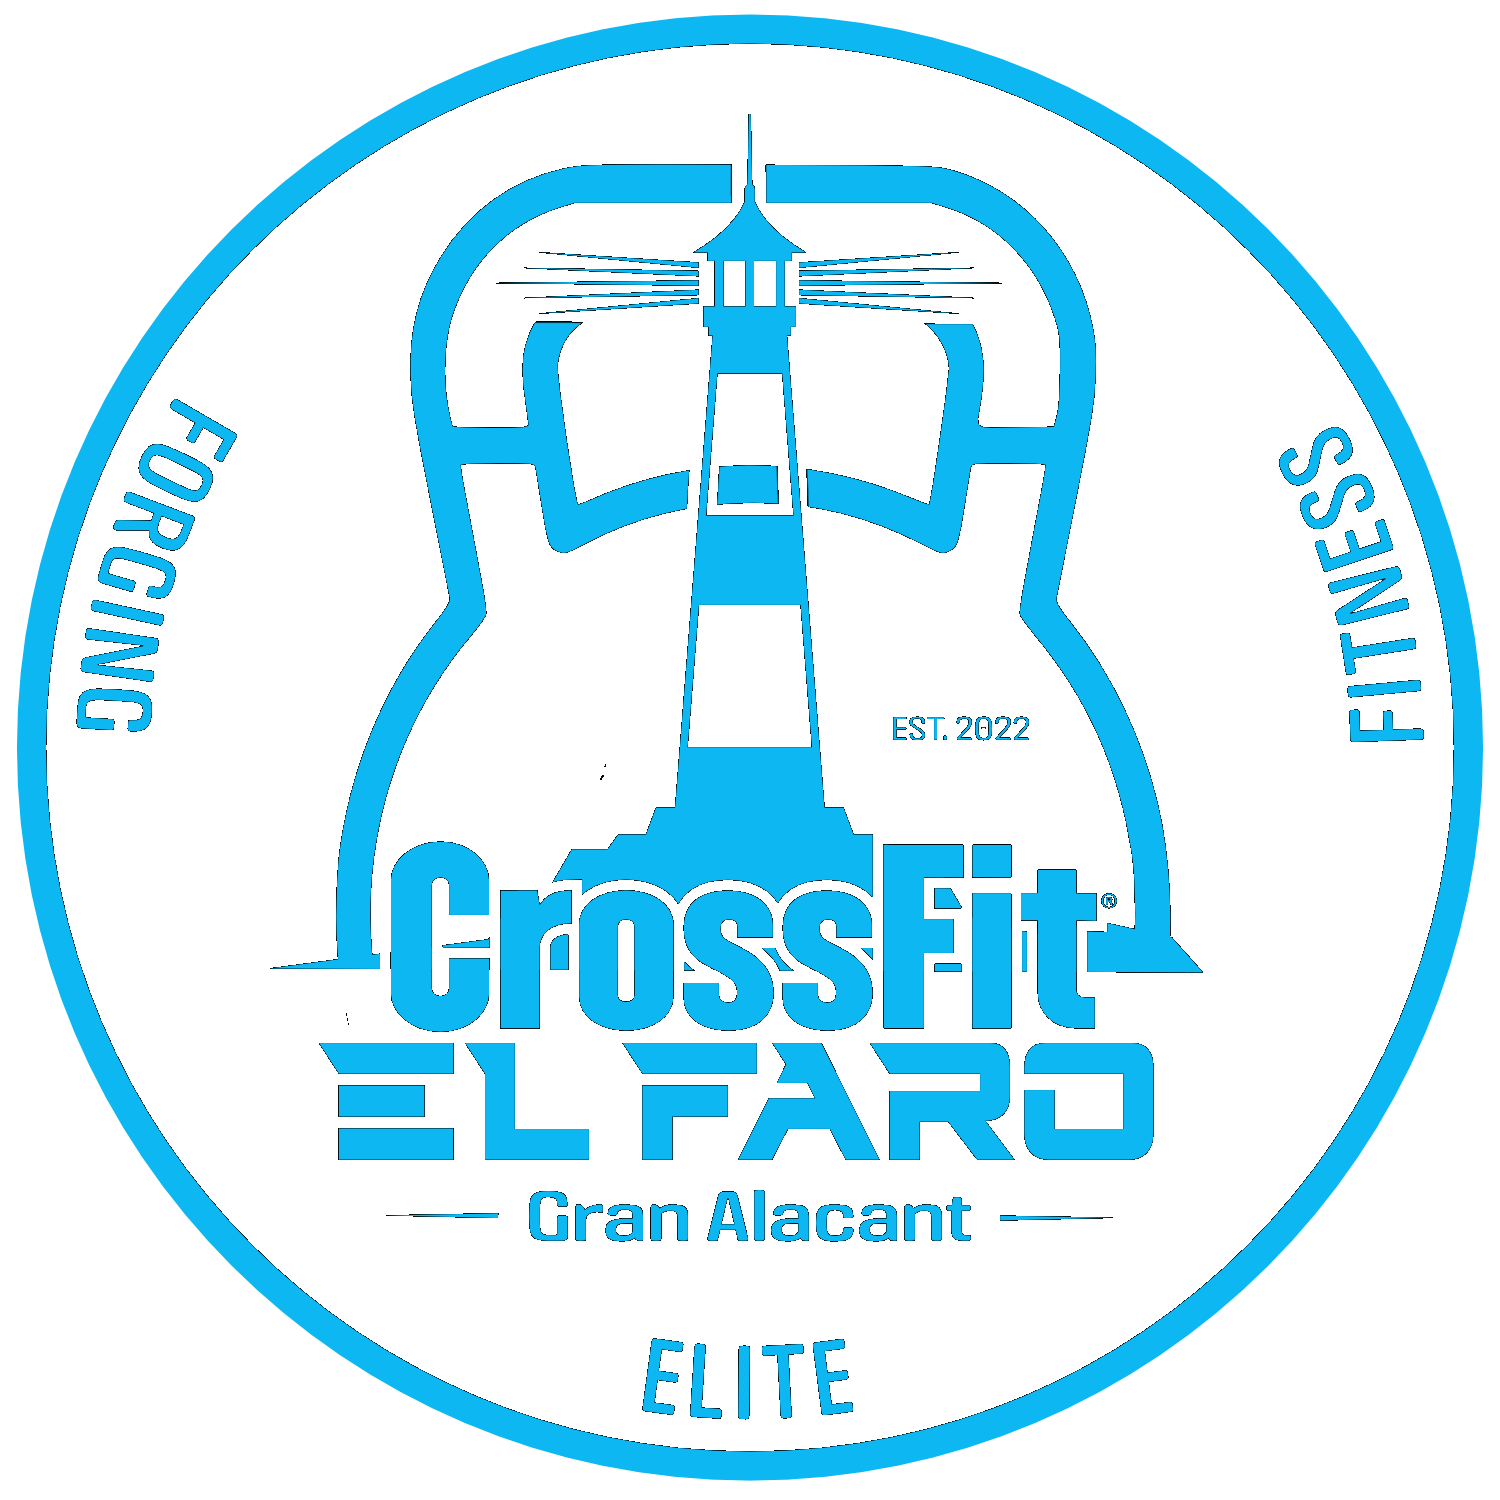 CrossFit El Faro